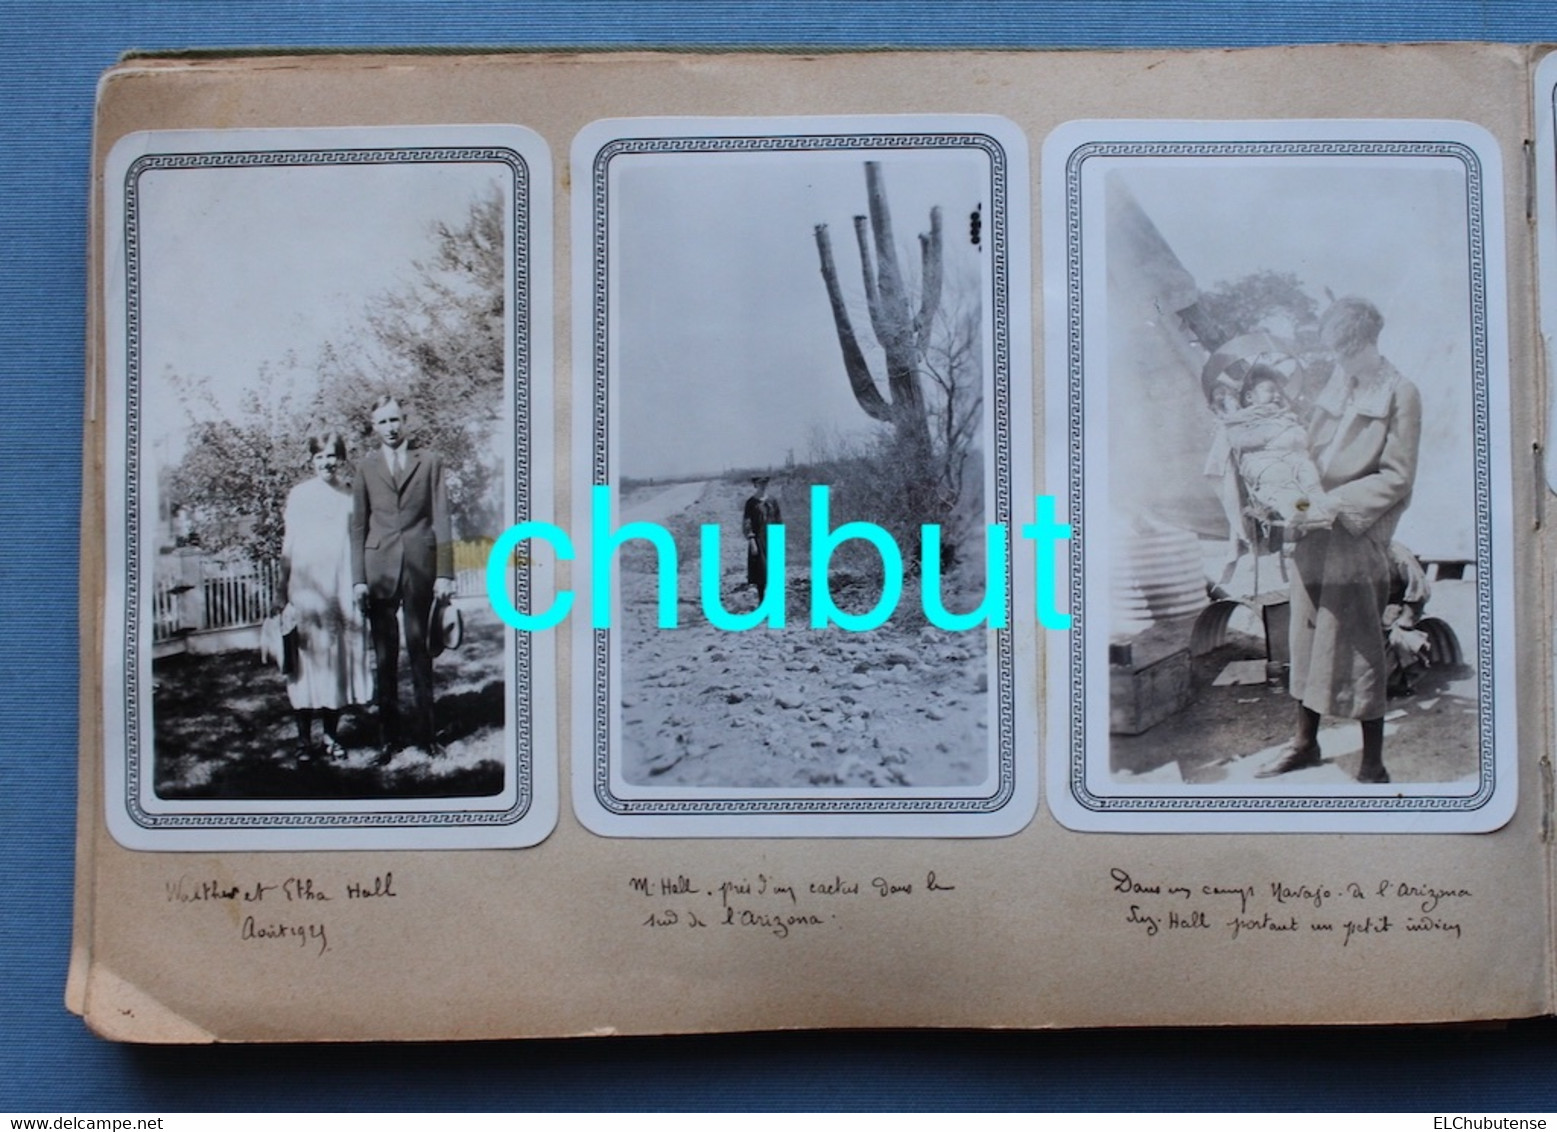 Album photos poilu guerre 14-18 Les Éparges Champagne famille 1920-30 Maroc Usa France